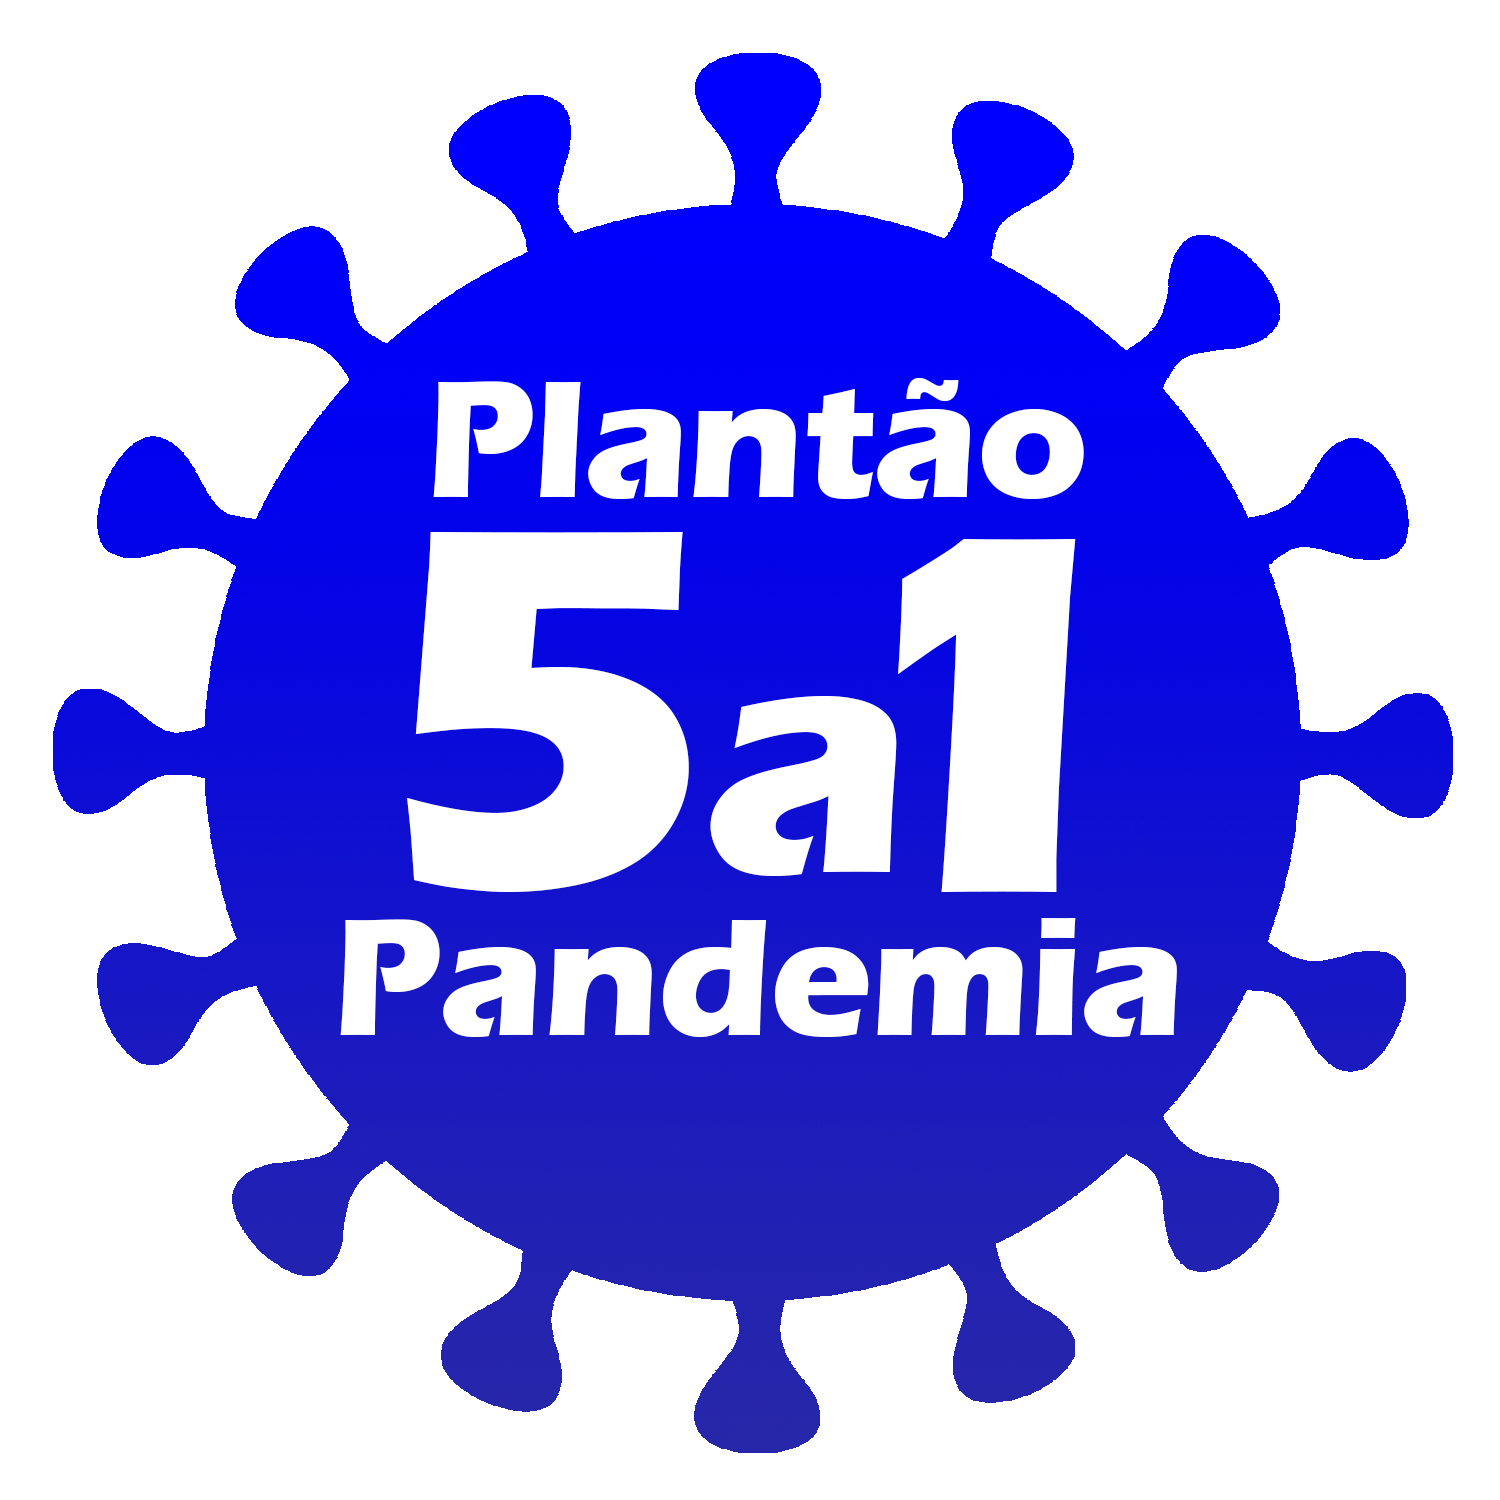 Plantão 5a1 Pandemia